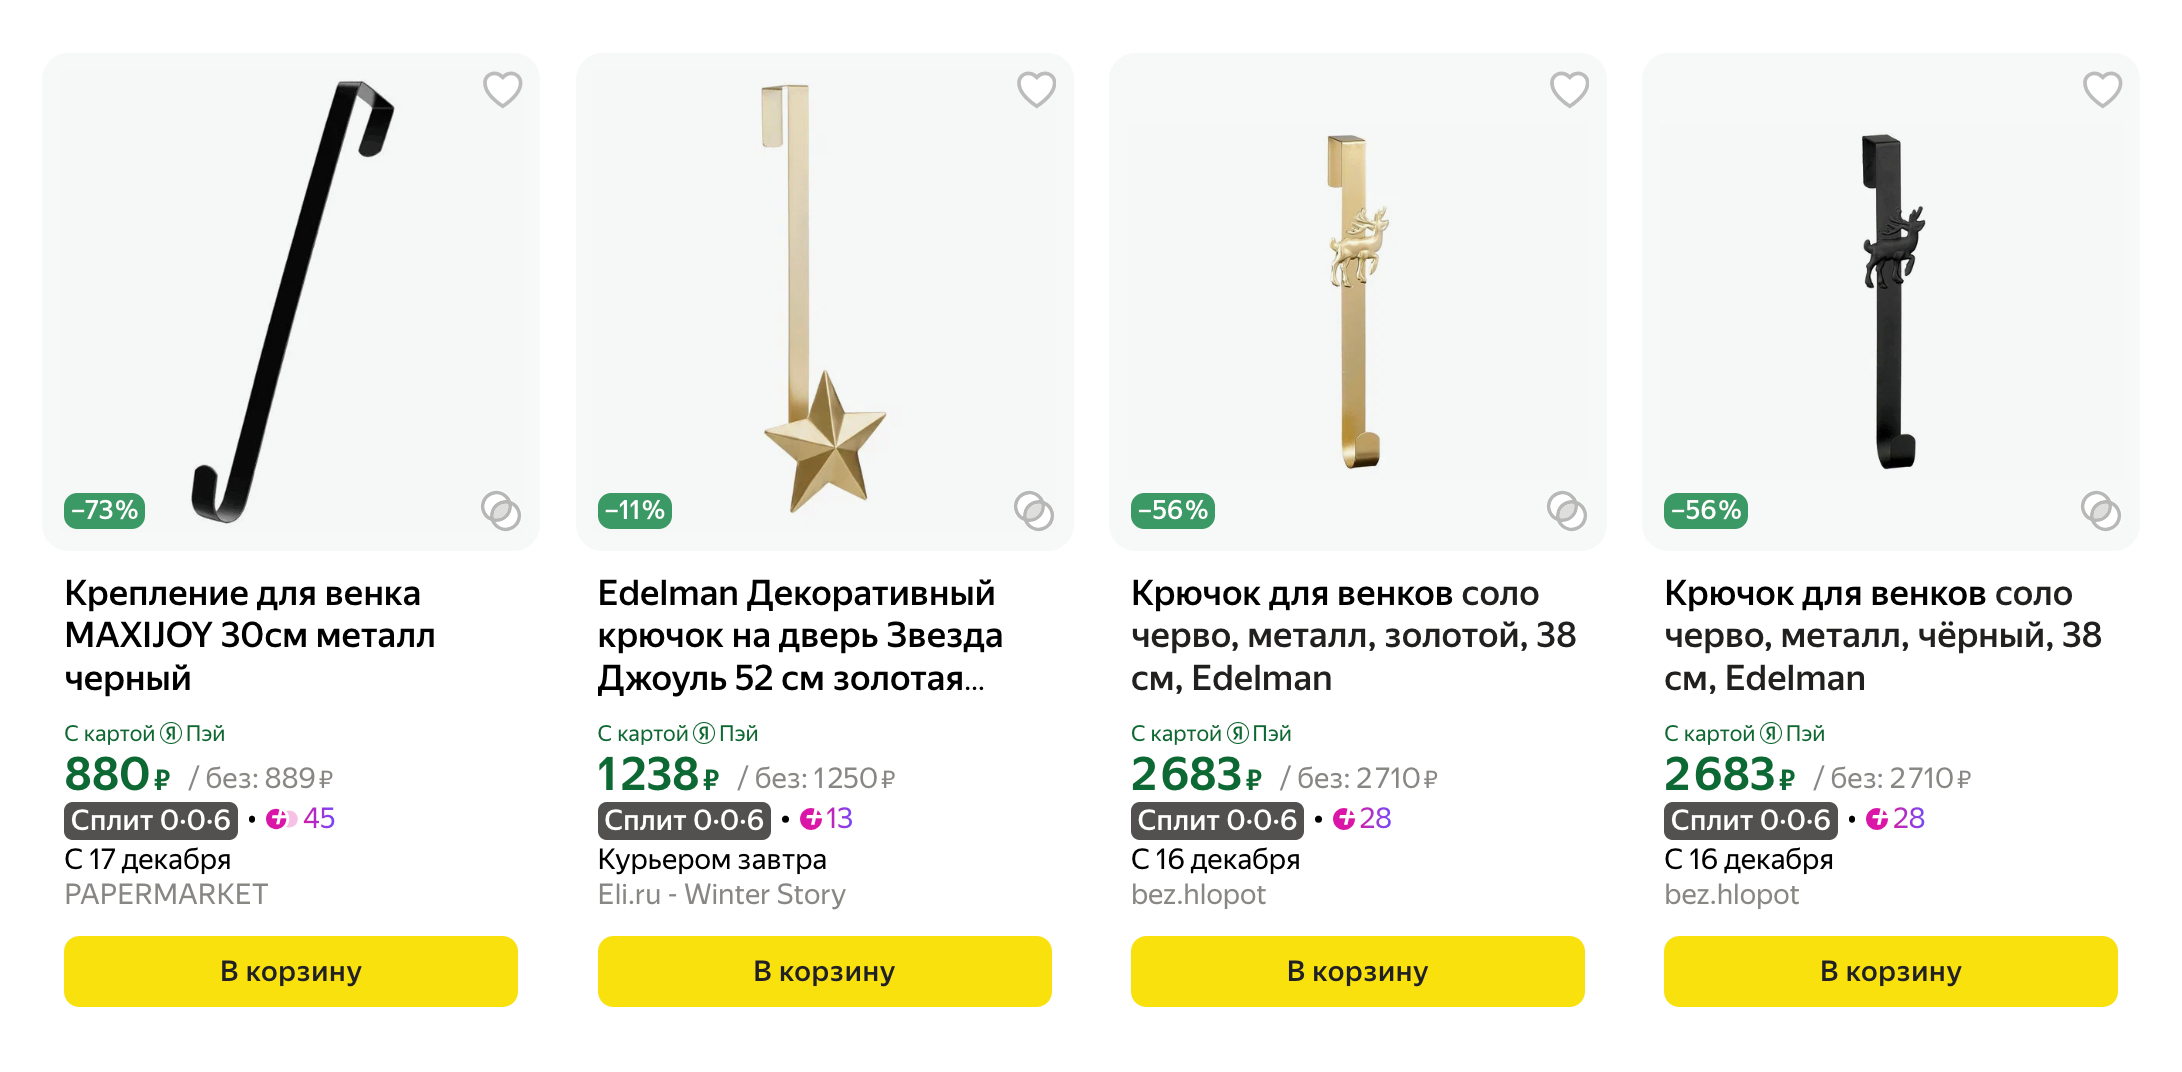 Такие крючки — это надежно и красиво. Источник: market.yandex.ru